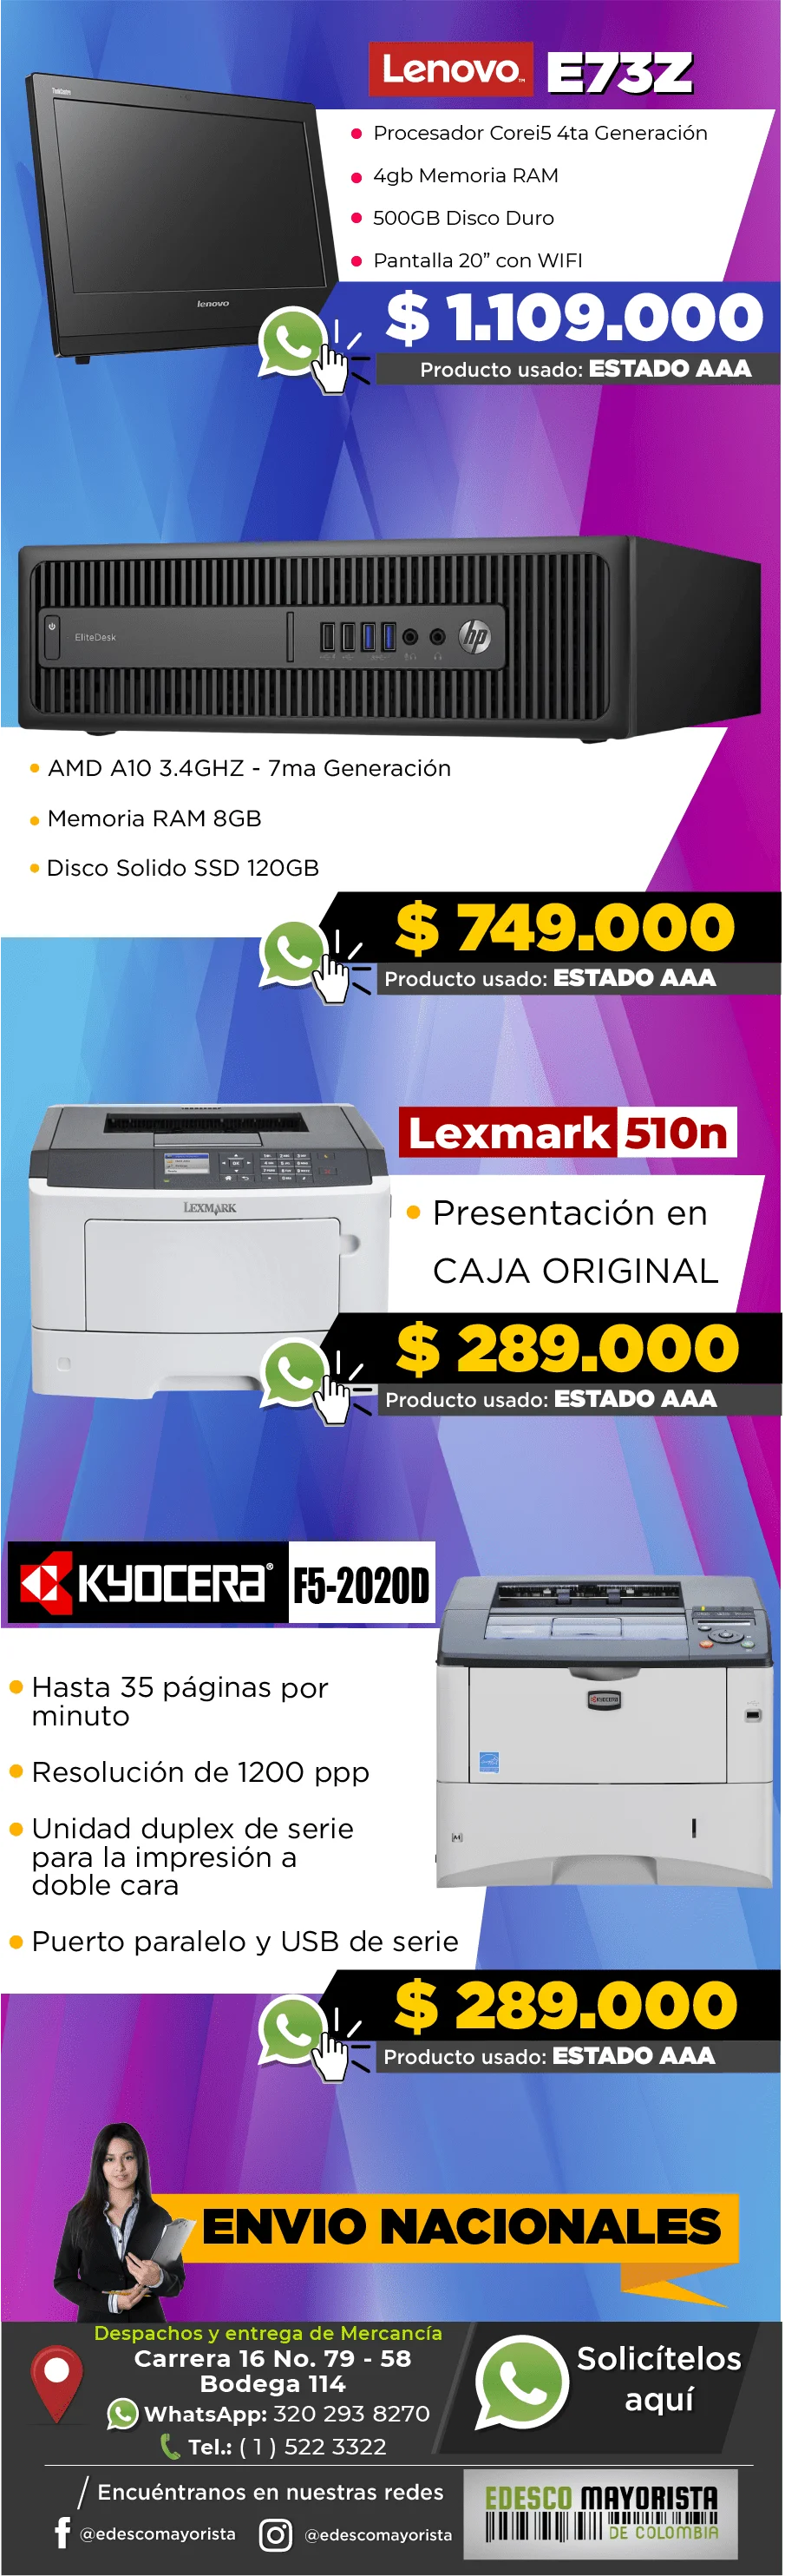 Impresora Kiocera F5-2020D